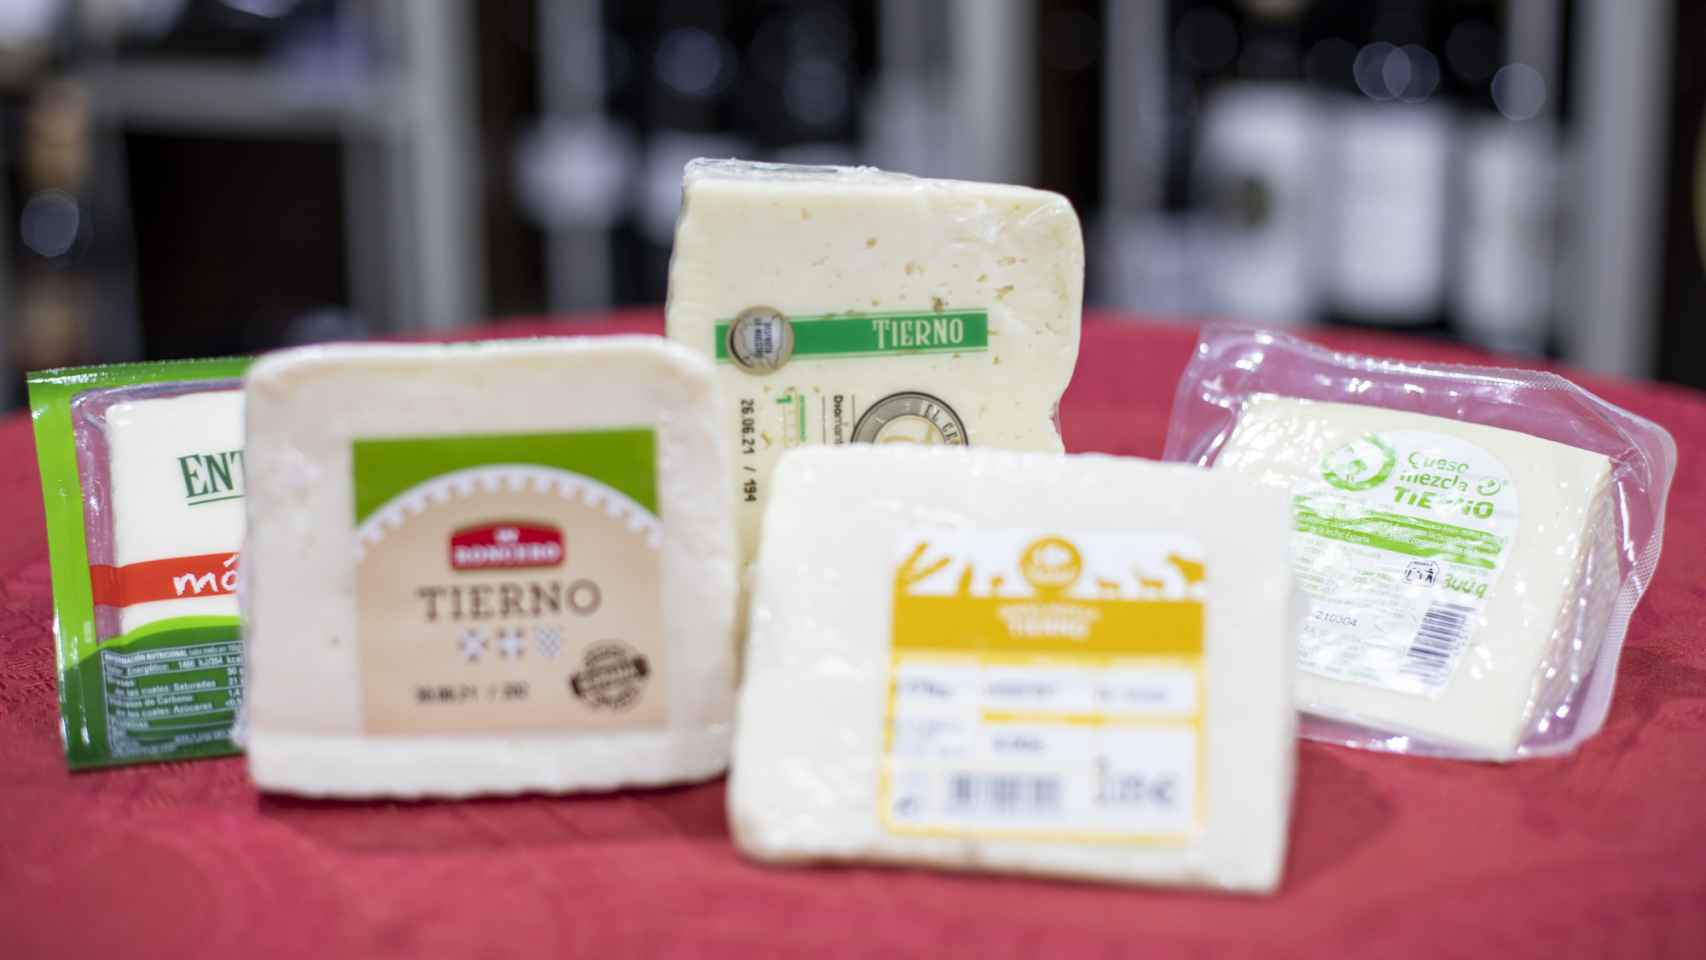 Los cinco quesos tiernos de los supermercados testados en la cata.